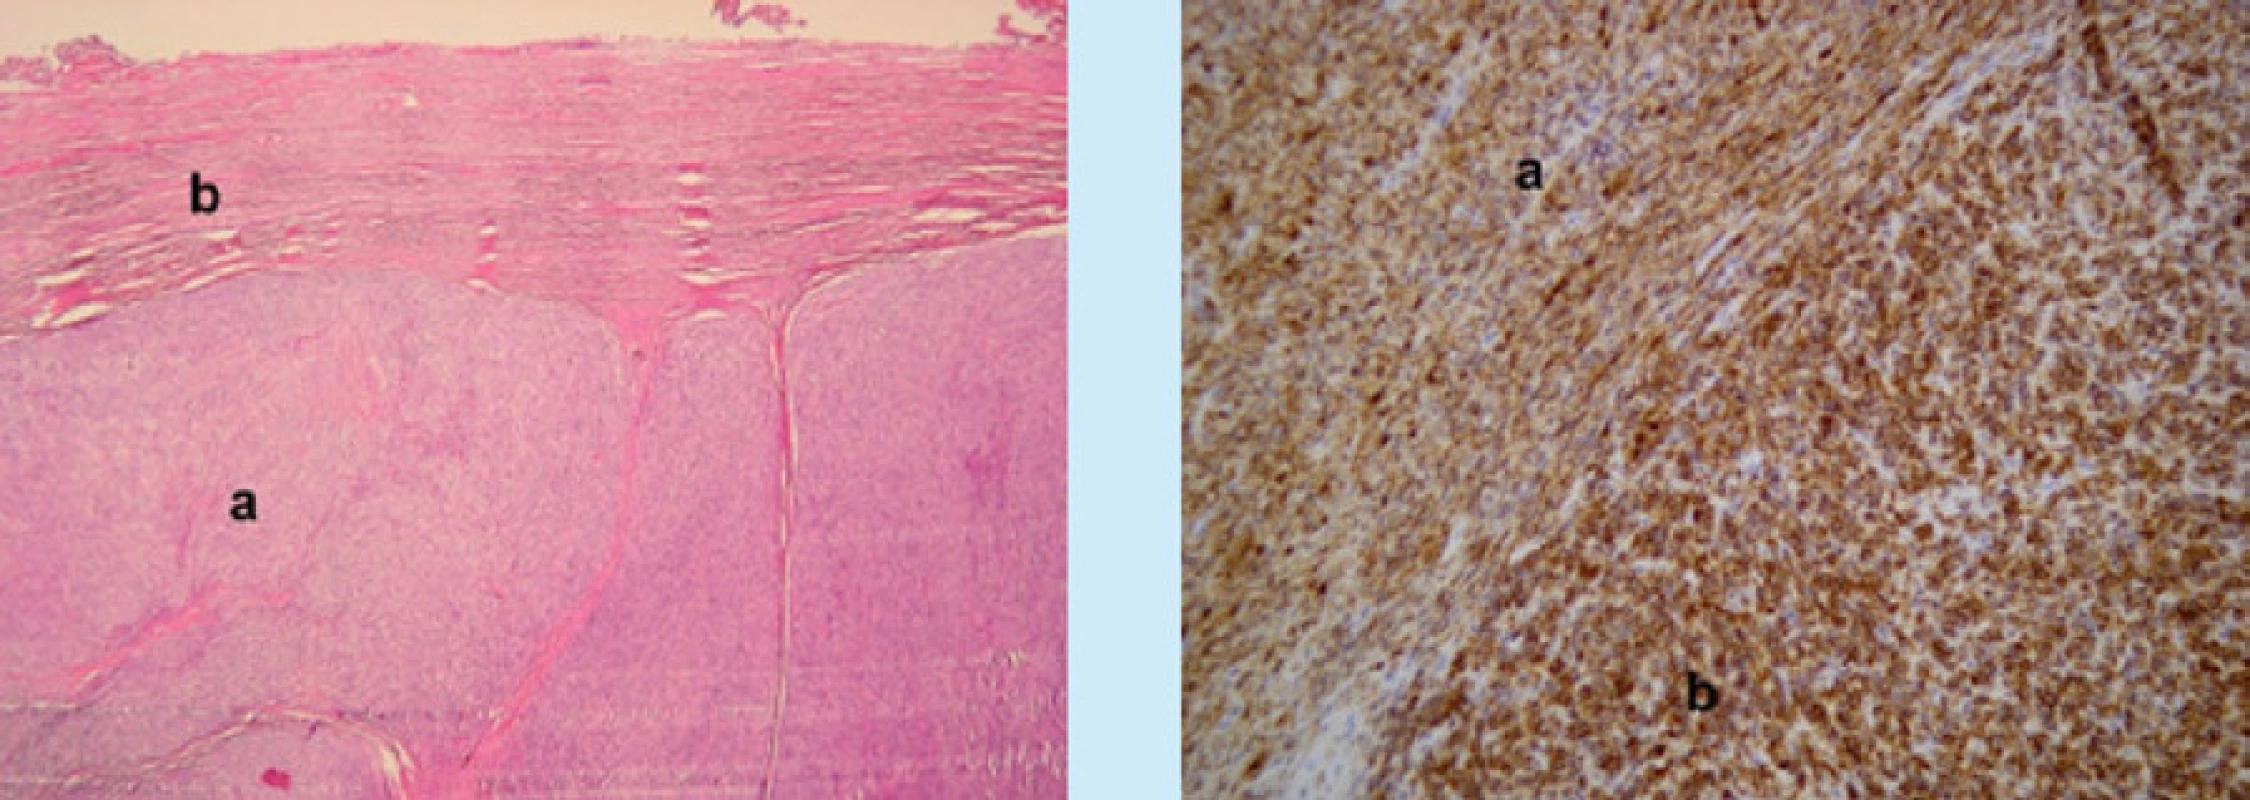 Mikroskopické obrazy STUMP s imunohistochemickým barvením. Vlevo (zvětšení 200×, Ki67) nízká proliferační
aktivita v dobře diferencovaných úsecích (a), jádra buněk v proliferační fázi mají hnědé zbarvení. V úsecích s odlišnou
morfologií je patrné zvýšení proliferační aktivity (b). Vpravo (zvětšení 200×, průkaz hladkosvalového aktinu, Smooth
Muscle Actin, SMA) dobře diferencované úseky nádorové tkáně tvořené vřetenitými buňkami jsou pozitivní, pozitivní
reakce je vizualizovaná hnědým zbarvením nádorových elementů (a), v nízce diferencovaných úsecích nádorového
ložiska tvořené buňkami s odlišnou morfologií je reakce negativní (b)<br>
Fig. 2. Microscopic images of STUMP with immunohistochemical staining. On the left (magnification 200 ×, Ki67)
low proliferative activity in well-differentiated sections (a), cell nuclei in the proliferation phase are brown in color. In
sections with different morphology, an increase in proliferative activity is evident (b). On the right (magnification 200 ×,
detection of smooth muscle actin, SMA) well-differentiated sections of tumor tissue formed by spindle cells are positive,
positive reaction is visualized by brown staining of tumor elements (a), in low-differentiated sections of tumor deposit
formed by cells with different morphology is a negative reaction (b)